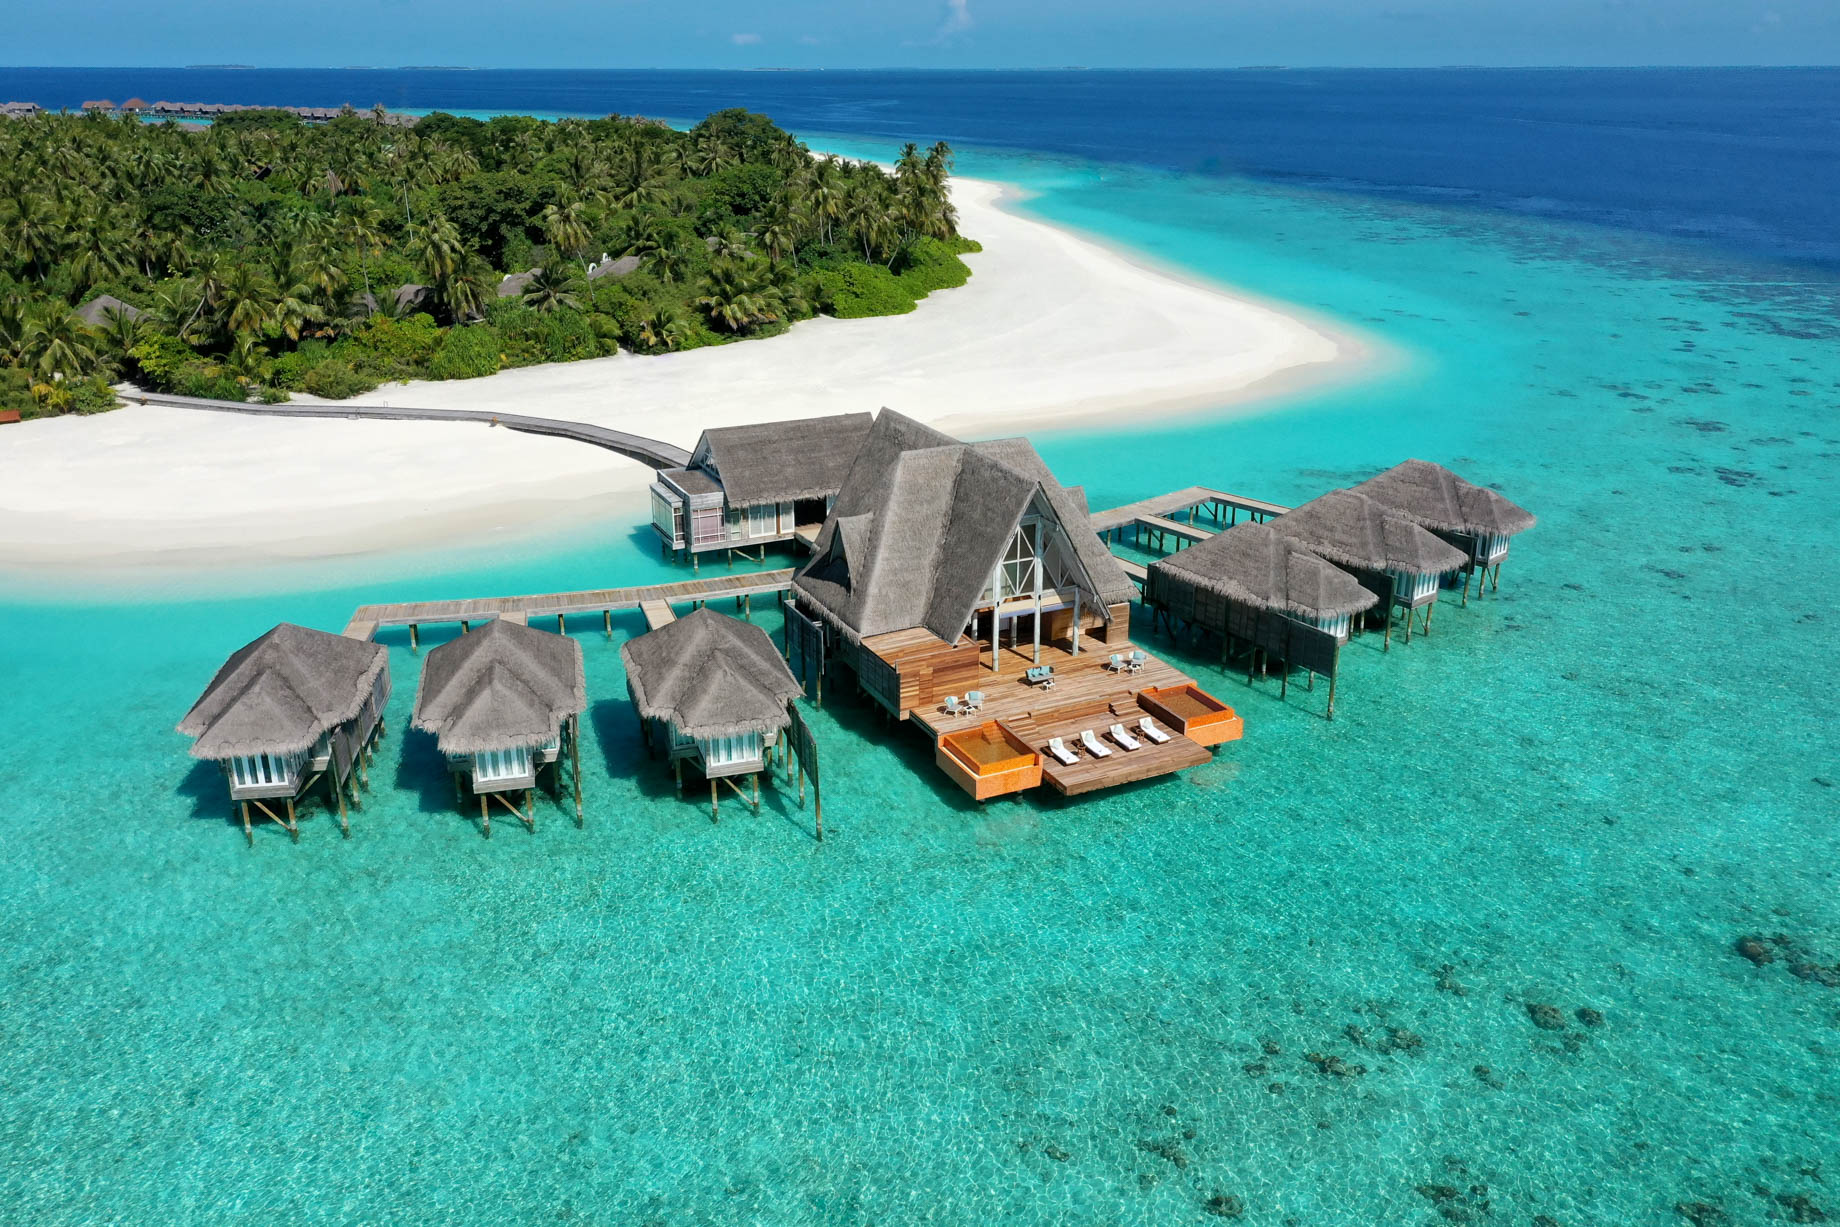 Anantara Kihavah Maldives Villas Resort – Baa Atoll, Maldives – Spa Aerial View